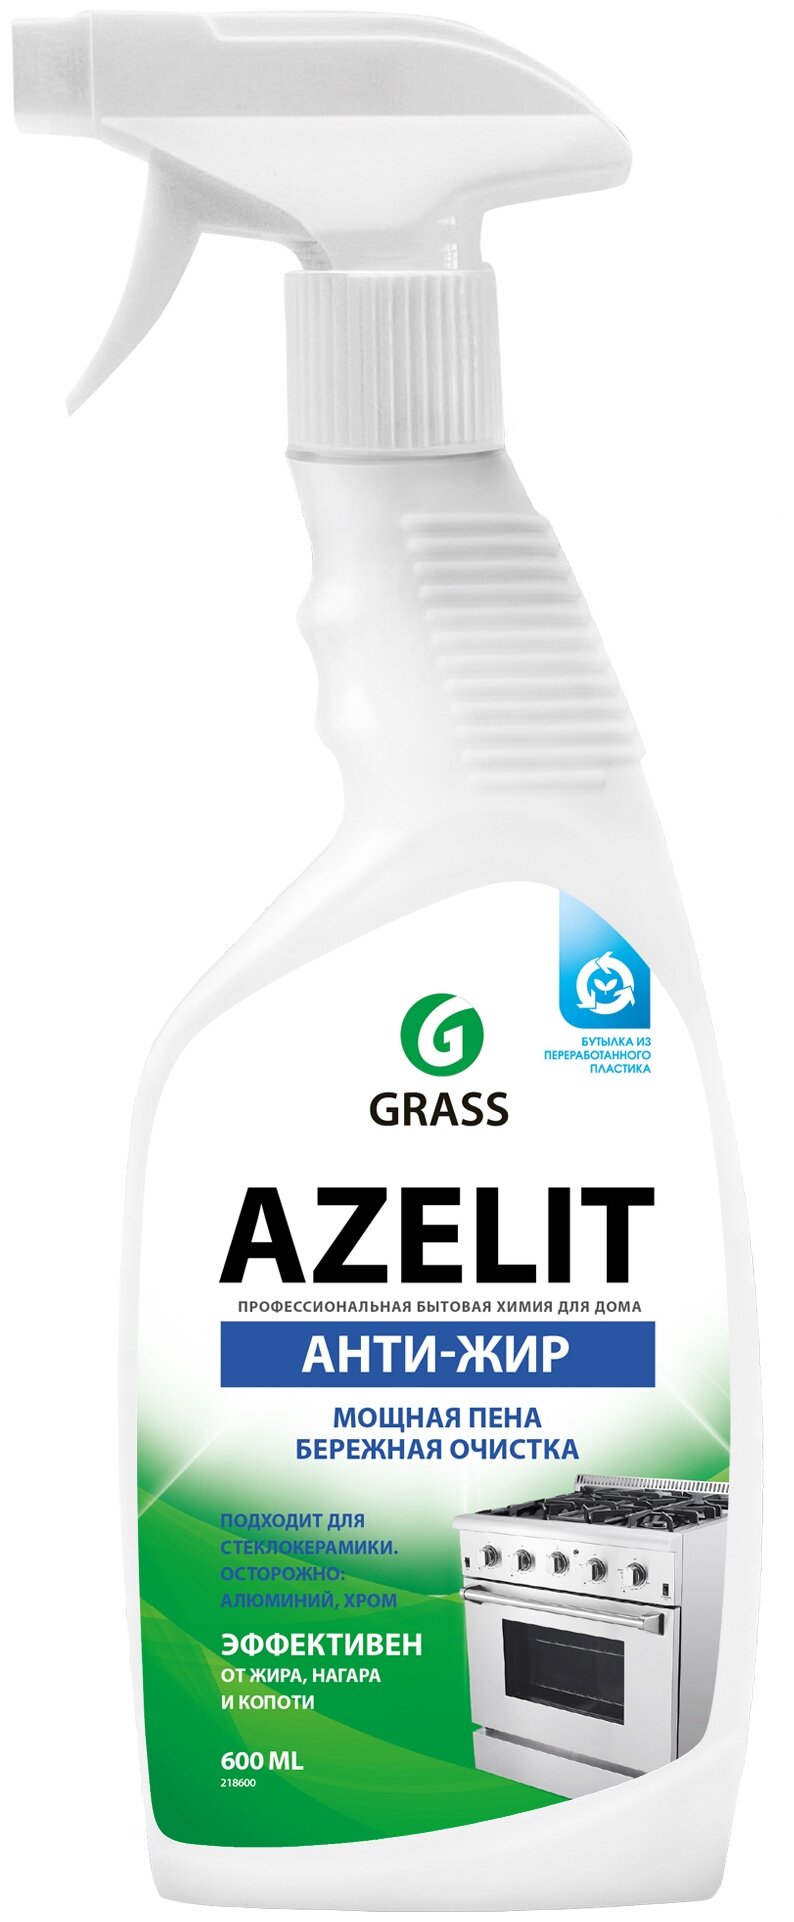     Grass Azelit, , 600 